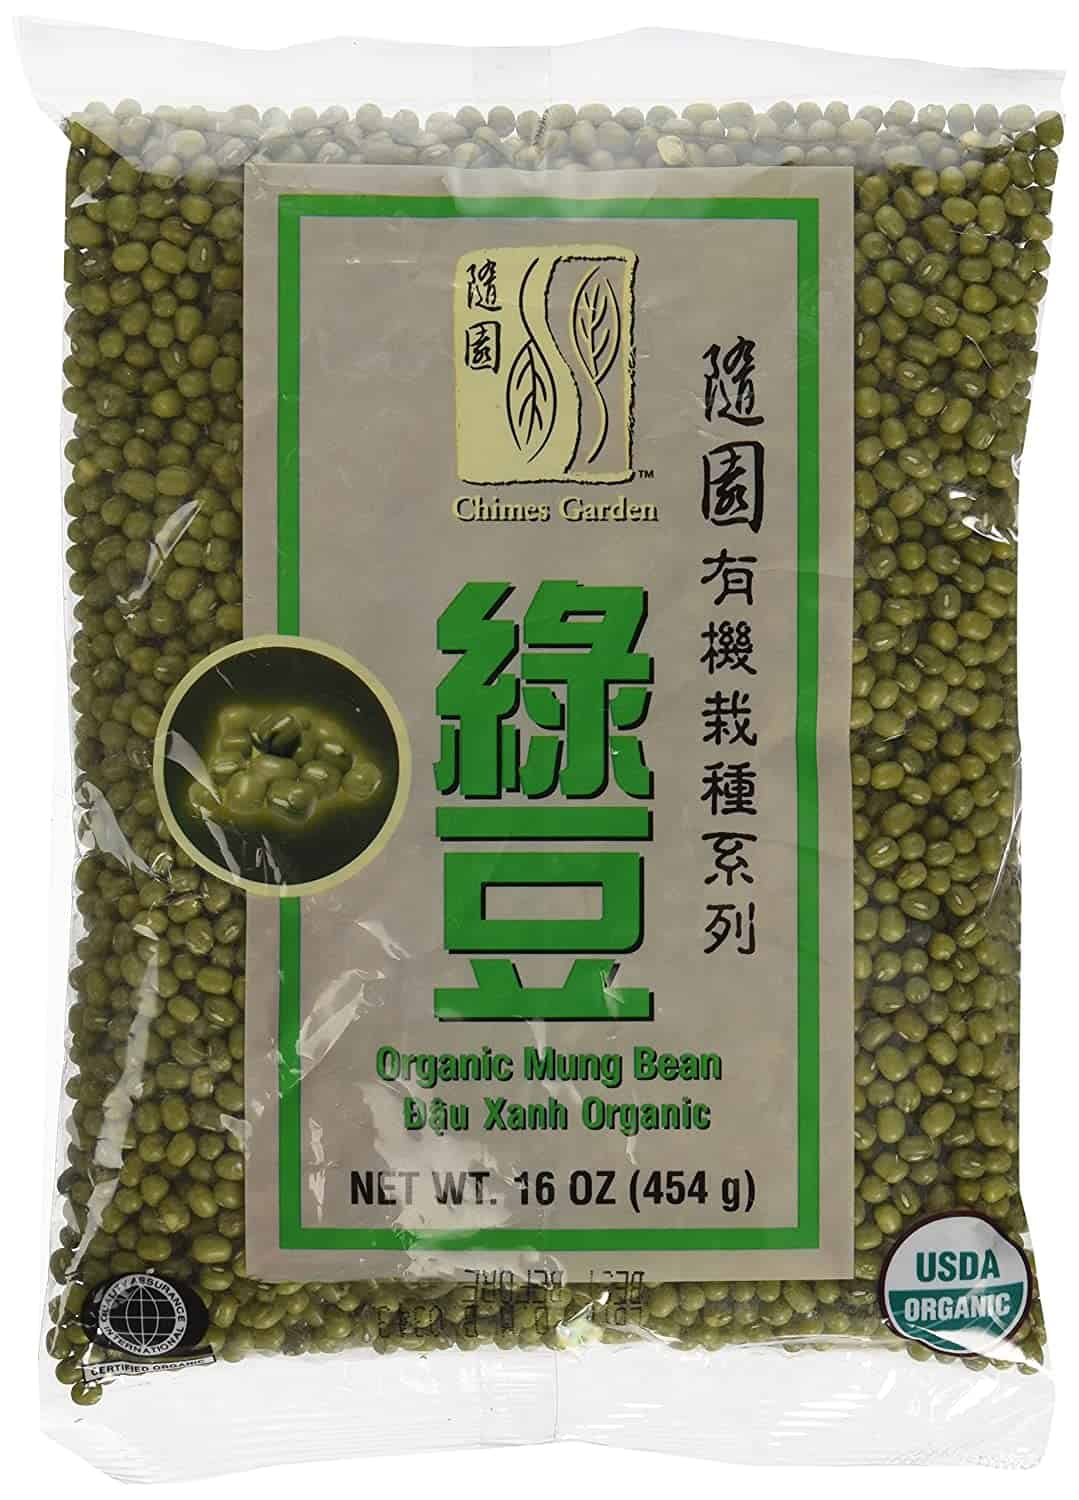 Melhor feijão mungo geral: Chimes Garden Organic Mung Beans